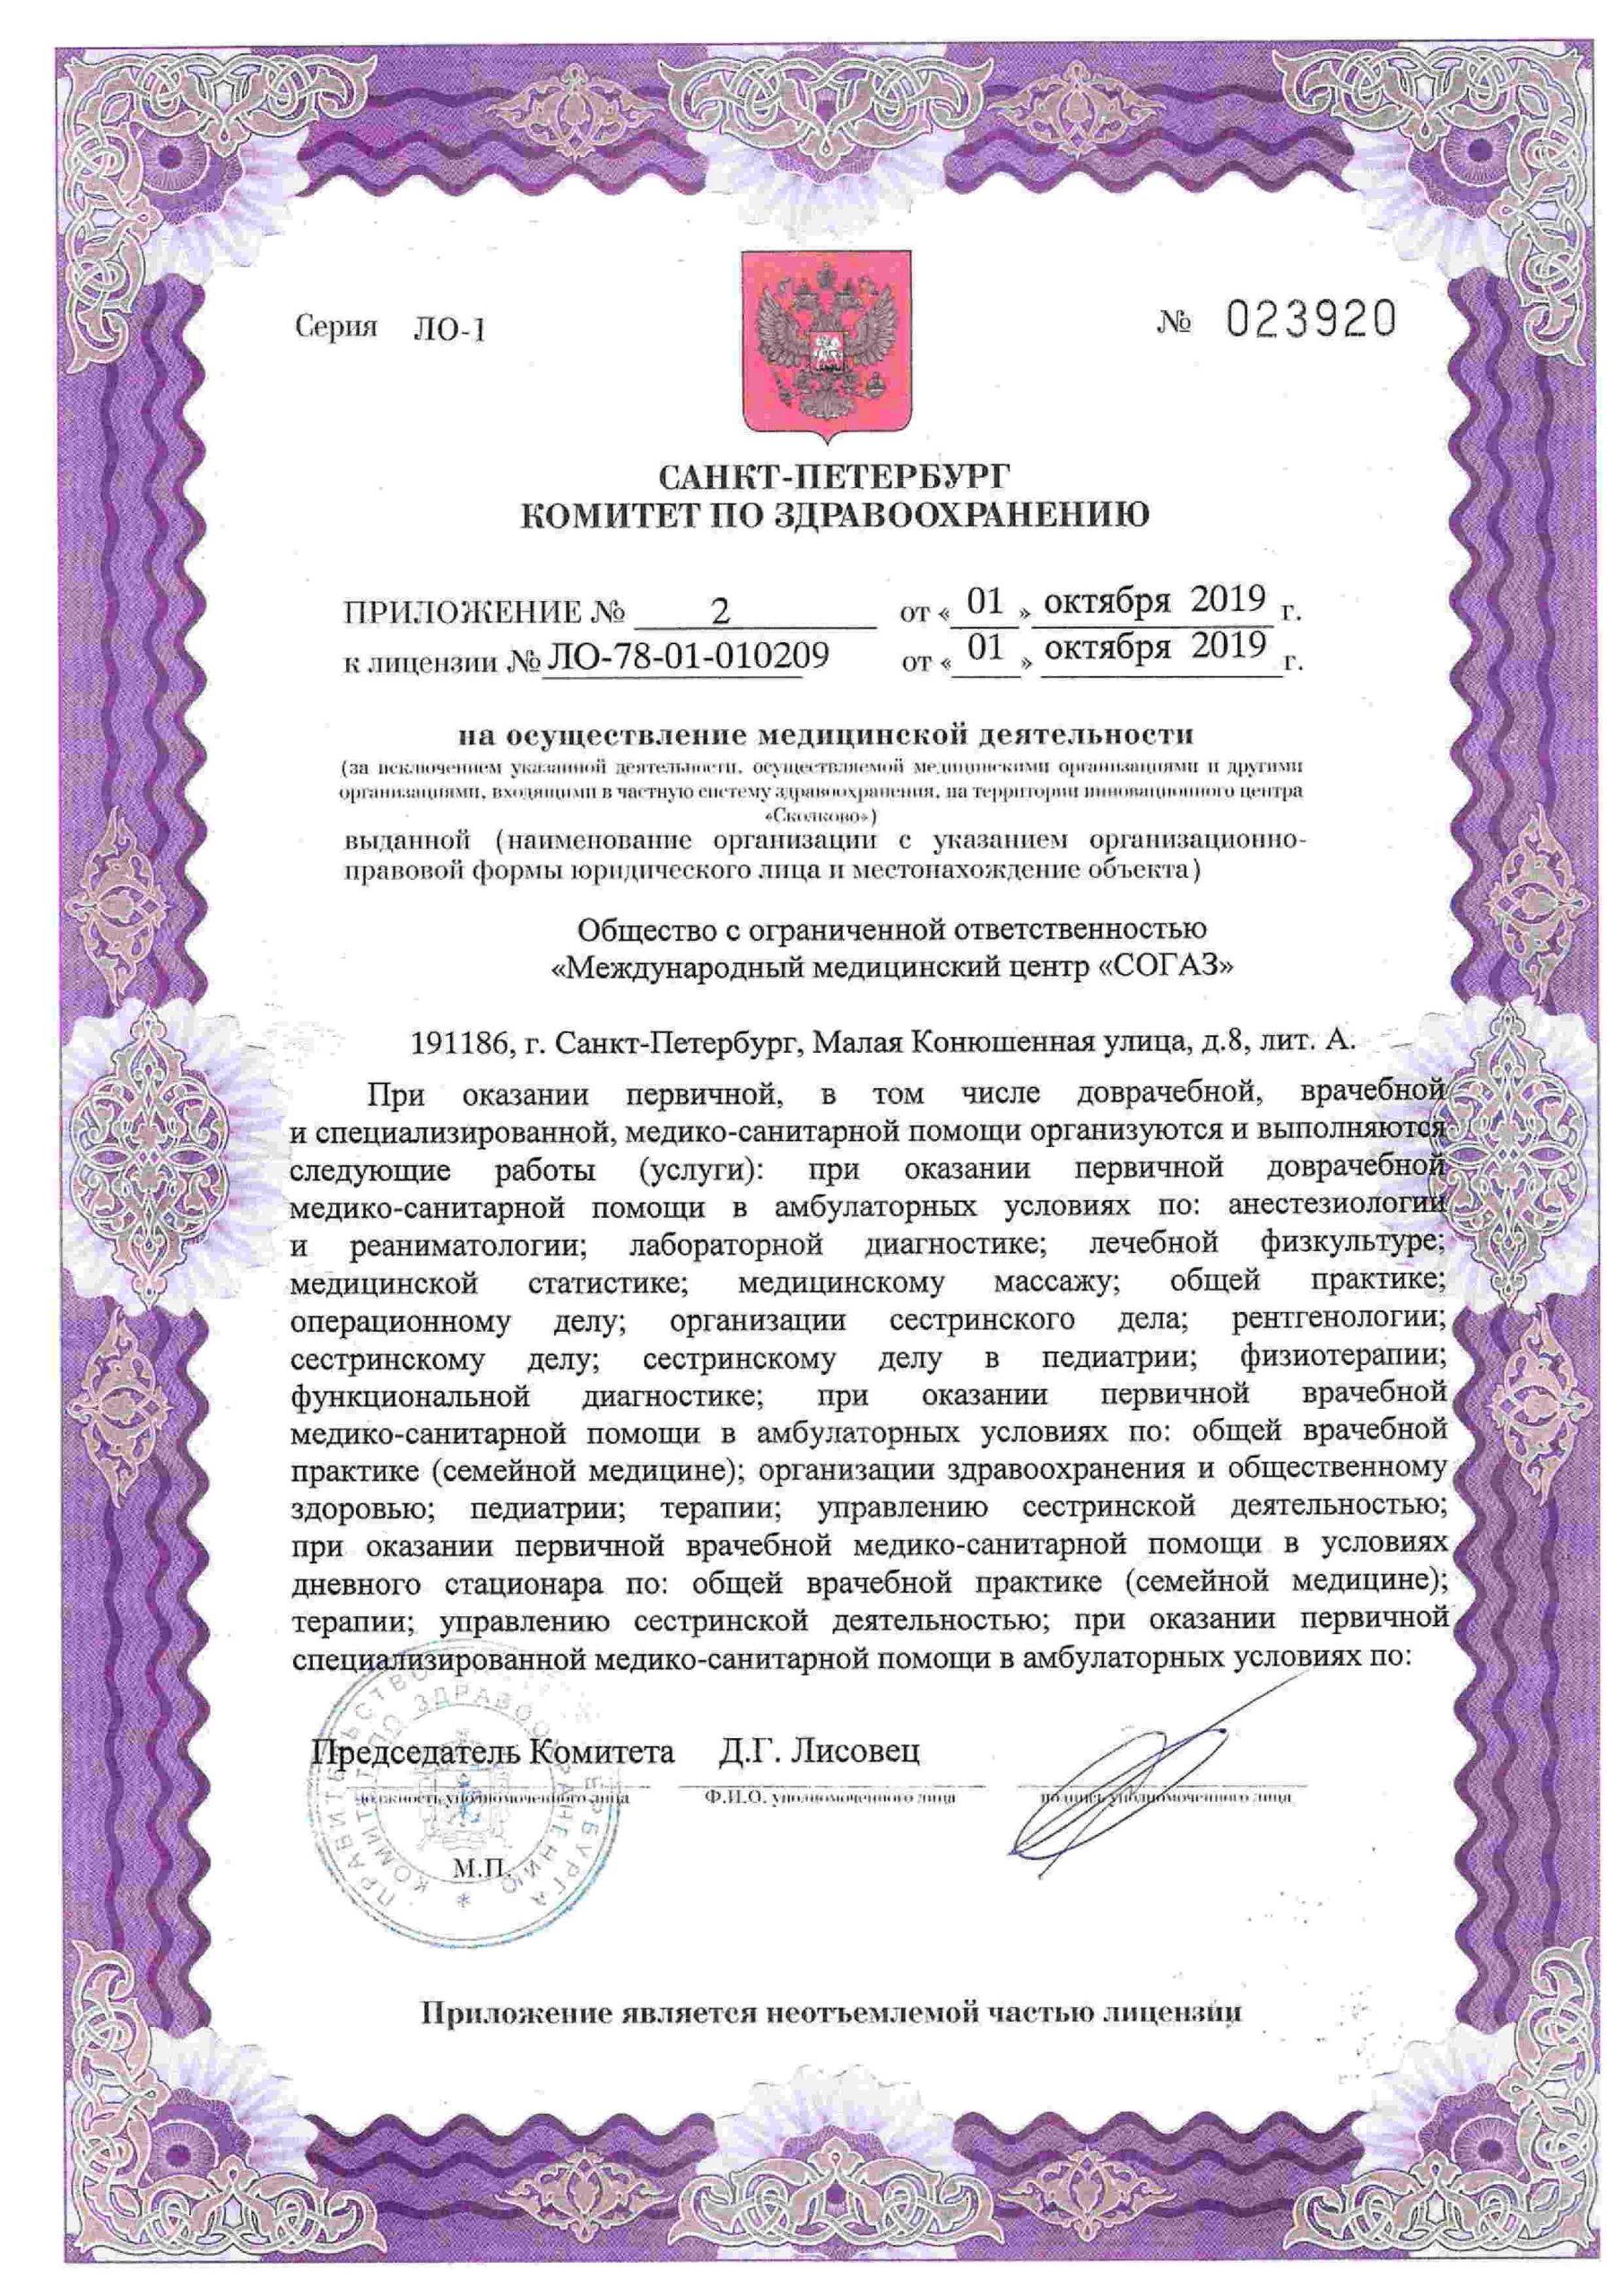 Международный медицинский центр СОГАЗ корпоратив лицензия №5